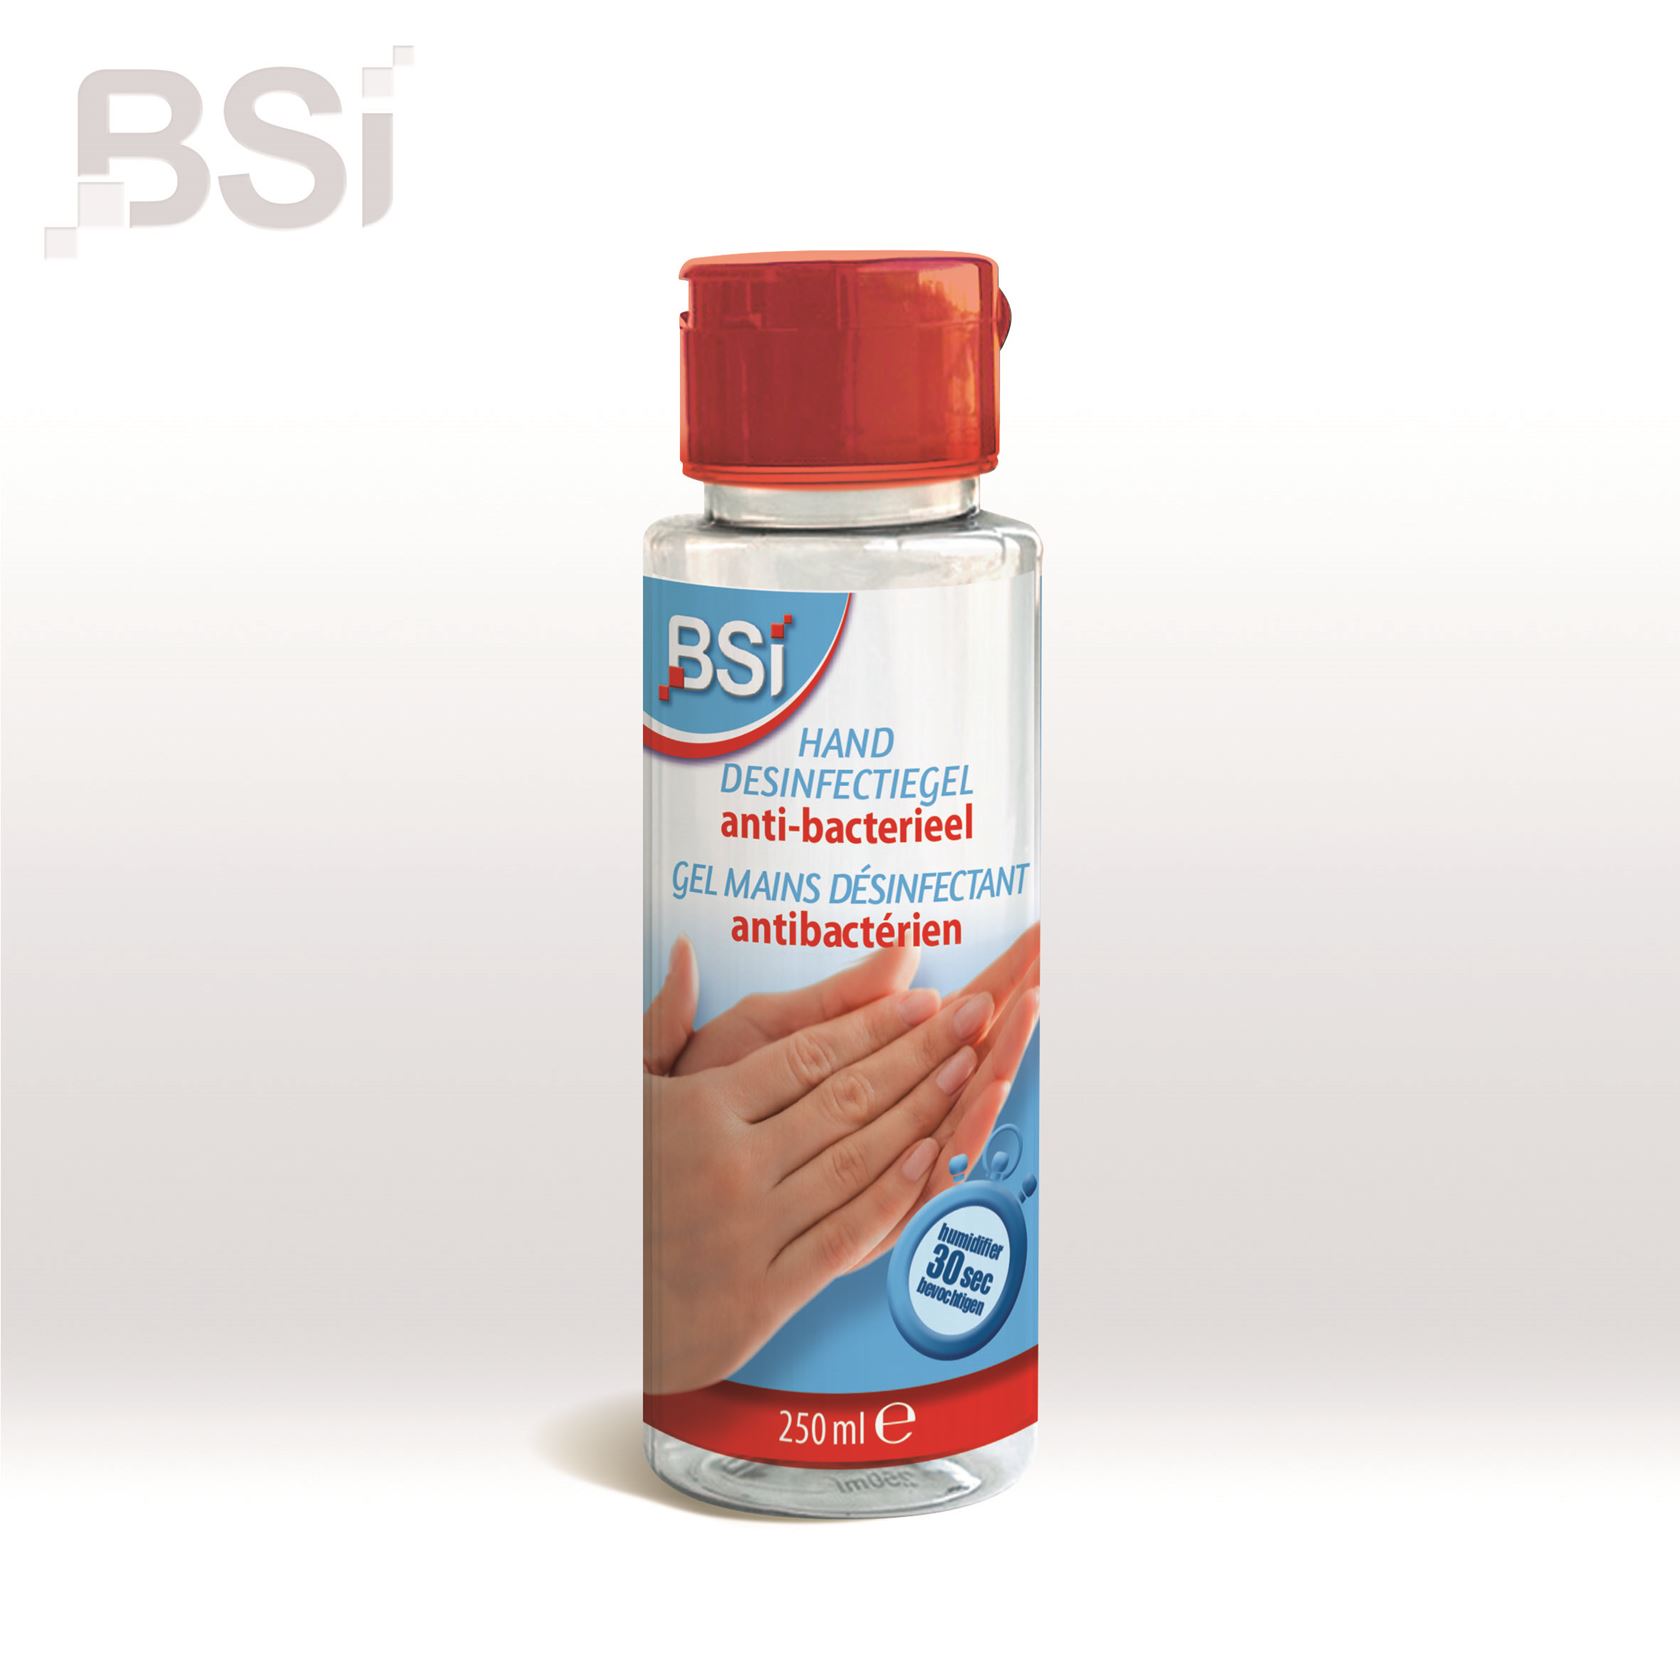 Desinfectiegel 250ml BSI  met alcohol - Handgel in knijpfles